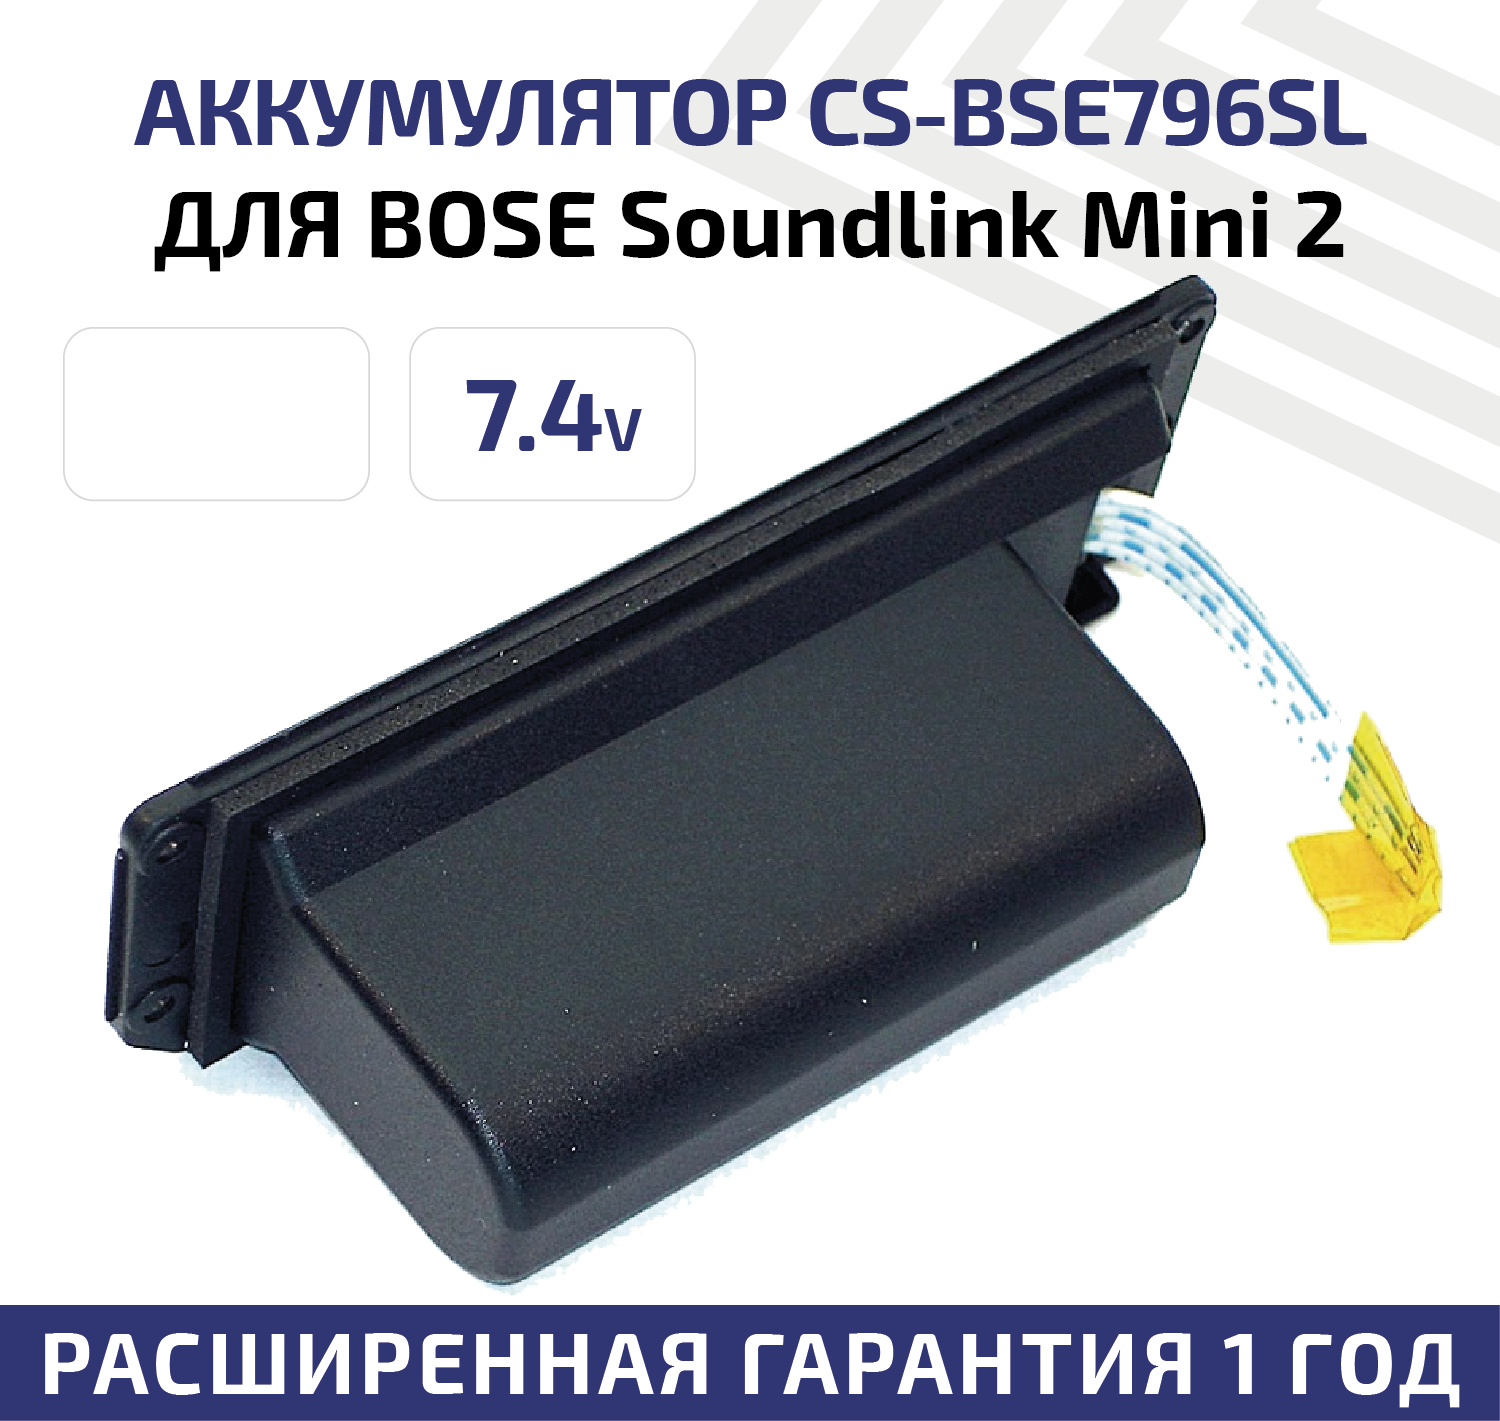 Аккумуляторная батарея (АКБ) CameronSino CS-BSE796SL для беспроводной музыкальной колонки Bose Soundlink Mini 2 7.4В 2200мАч 16.28Вт Li-Ion